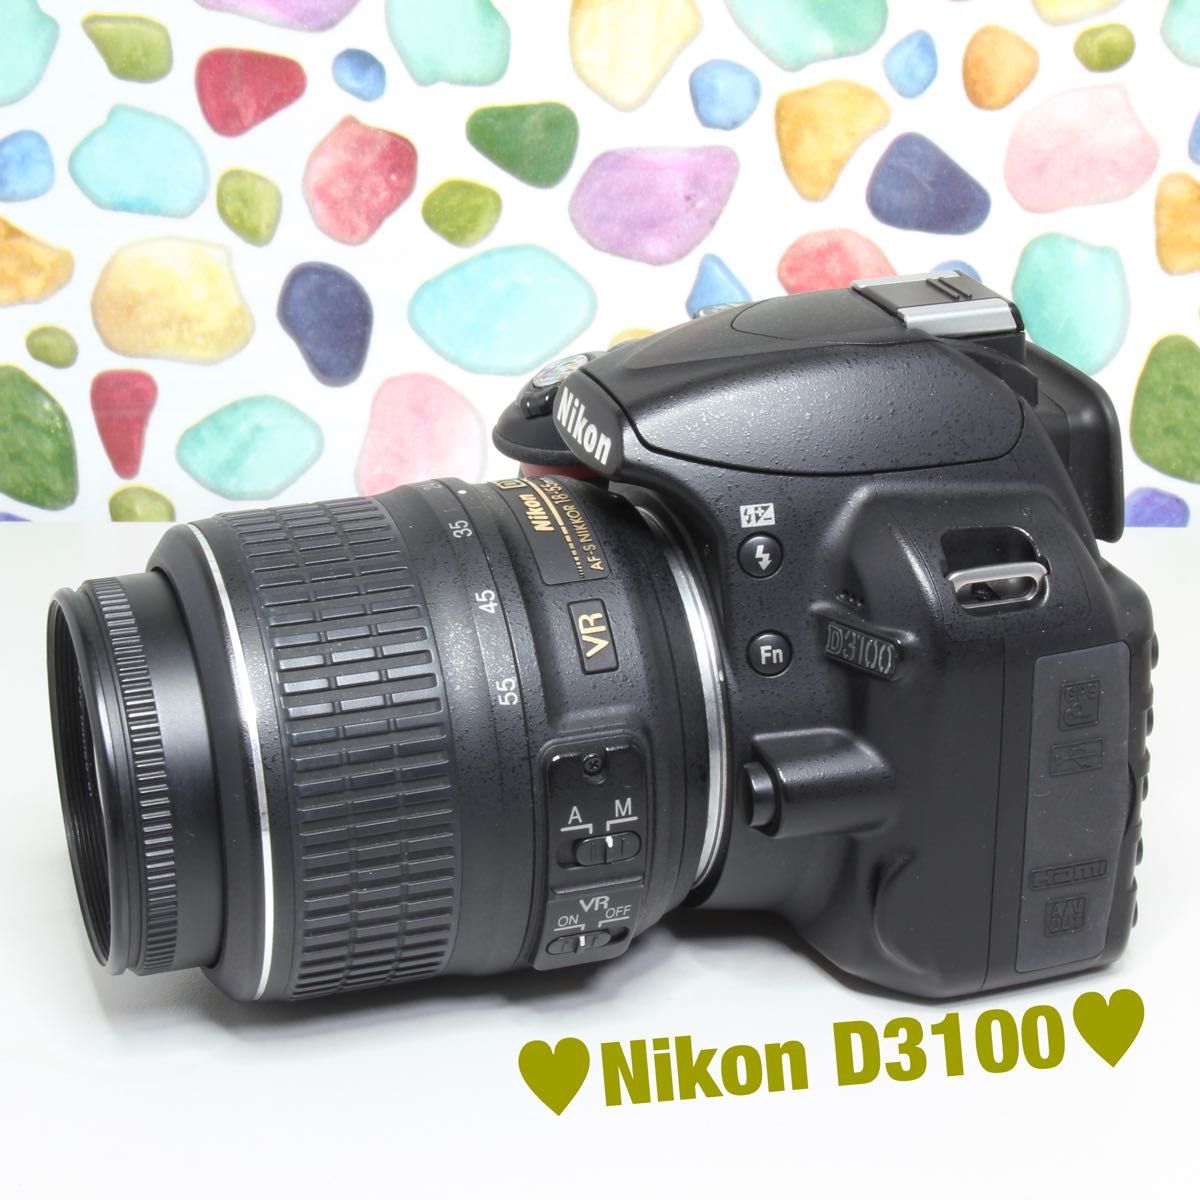 Nikon ニコン D3100 ハイスペック入門機 おすすめ一眼レフ スマホ転送